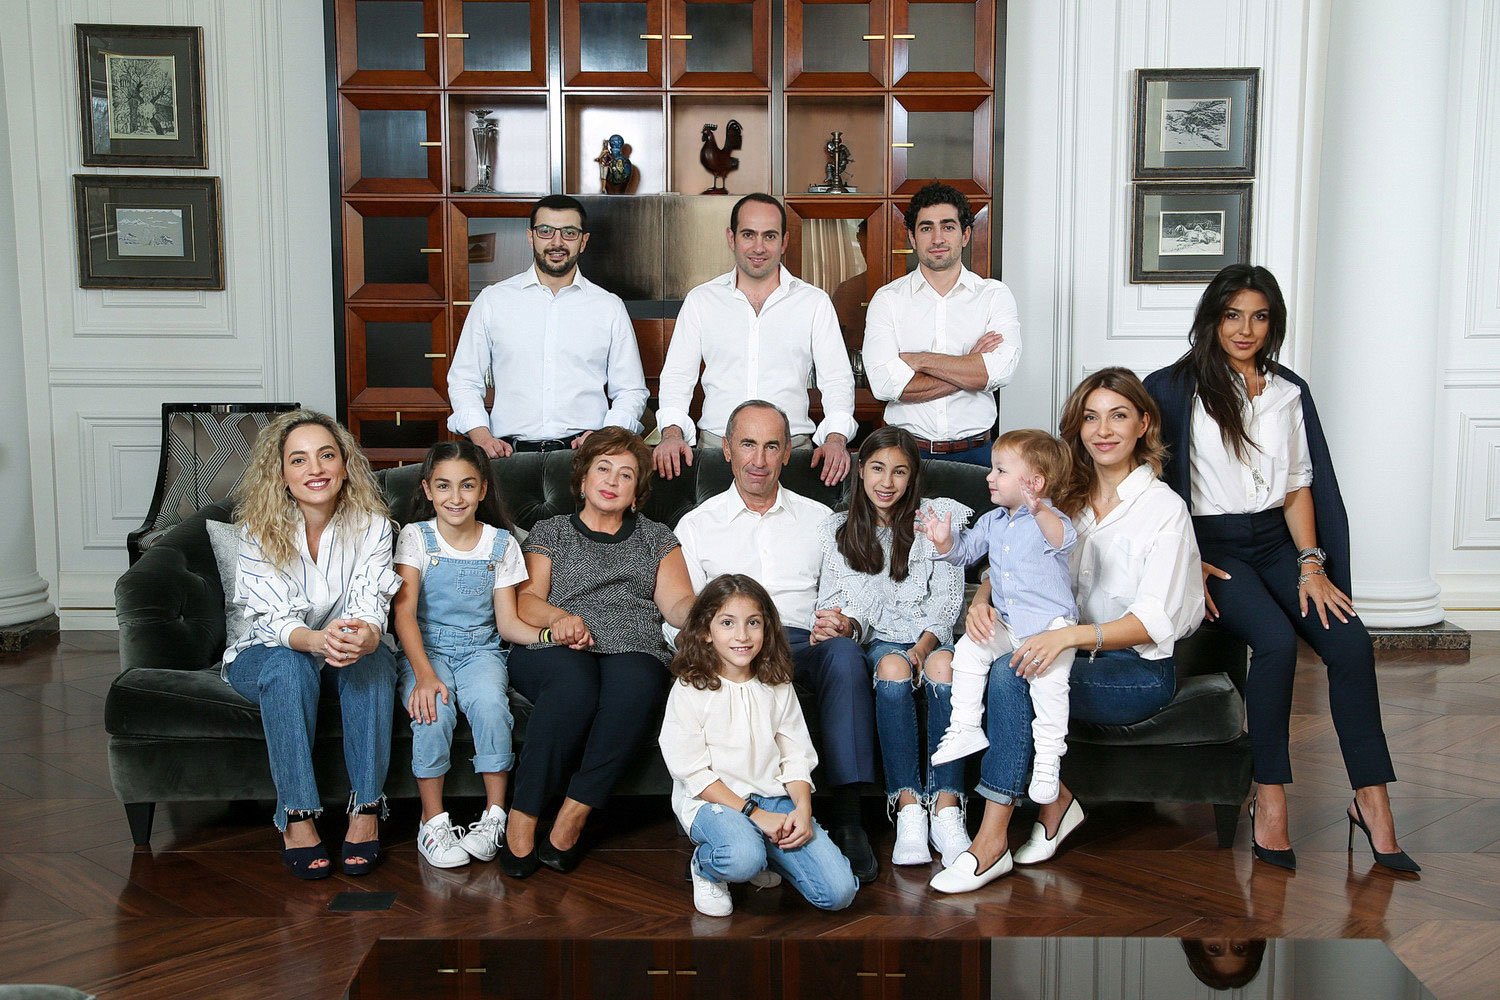 Ինչ ունեցվածքի է տիրապետում Քոչարյանի ընտանիքը. բացառիկ մանրամասներ քրեական գործից․ 1in.am